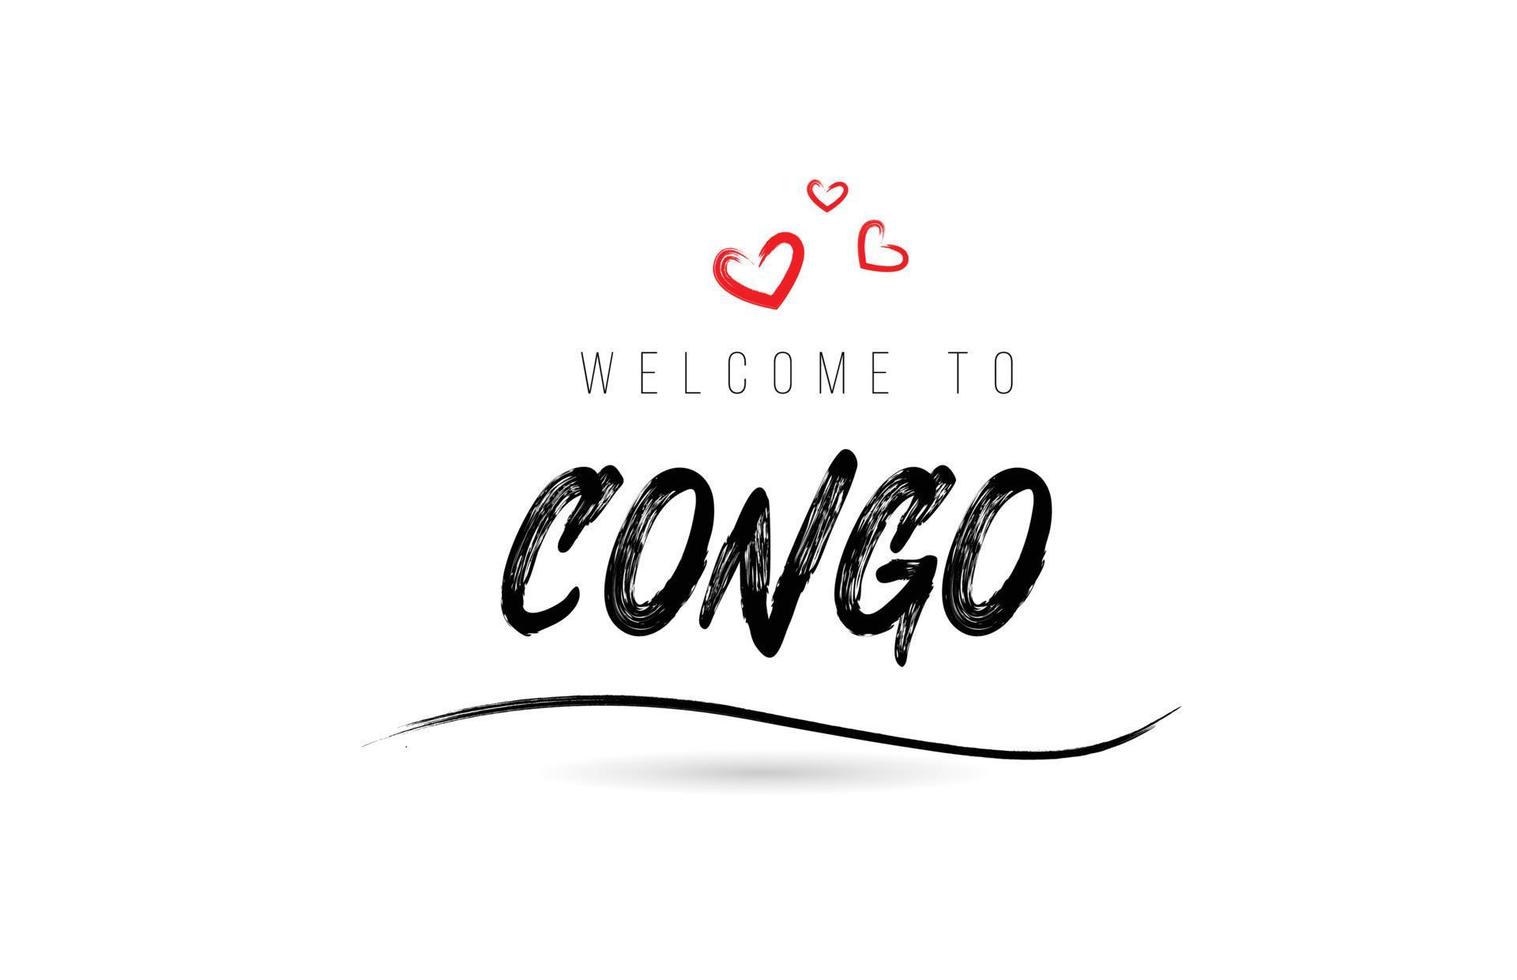 bienvenido a la tipografía de texto del país del congo con corazón de amor rojo y nombre negro vector